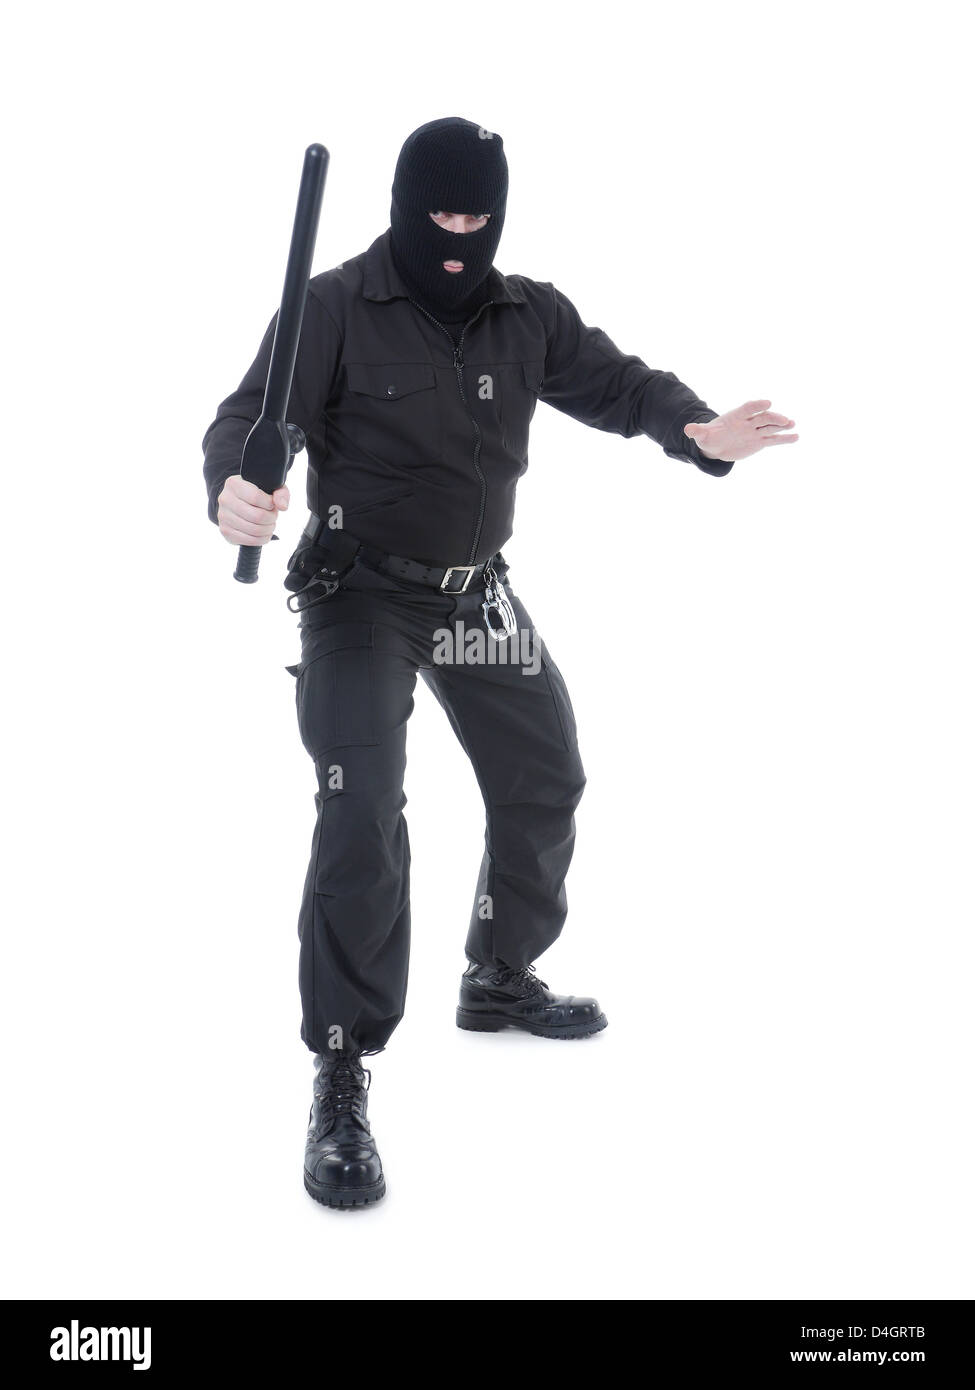 Polizia anti-terrorismo ragazzo indossa il nero uniforme e maschera nera tenendo saldamente police club in una mano pronta ad entrare in azione Foto Stock